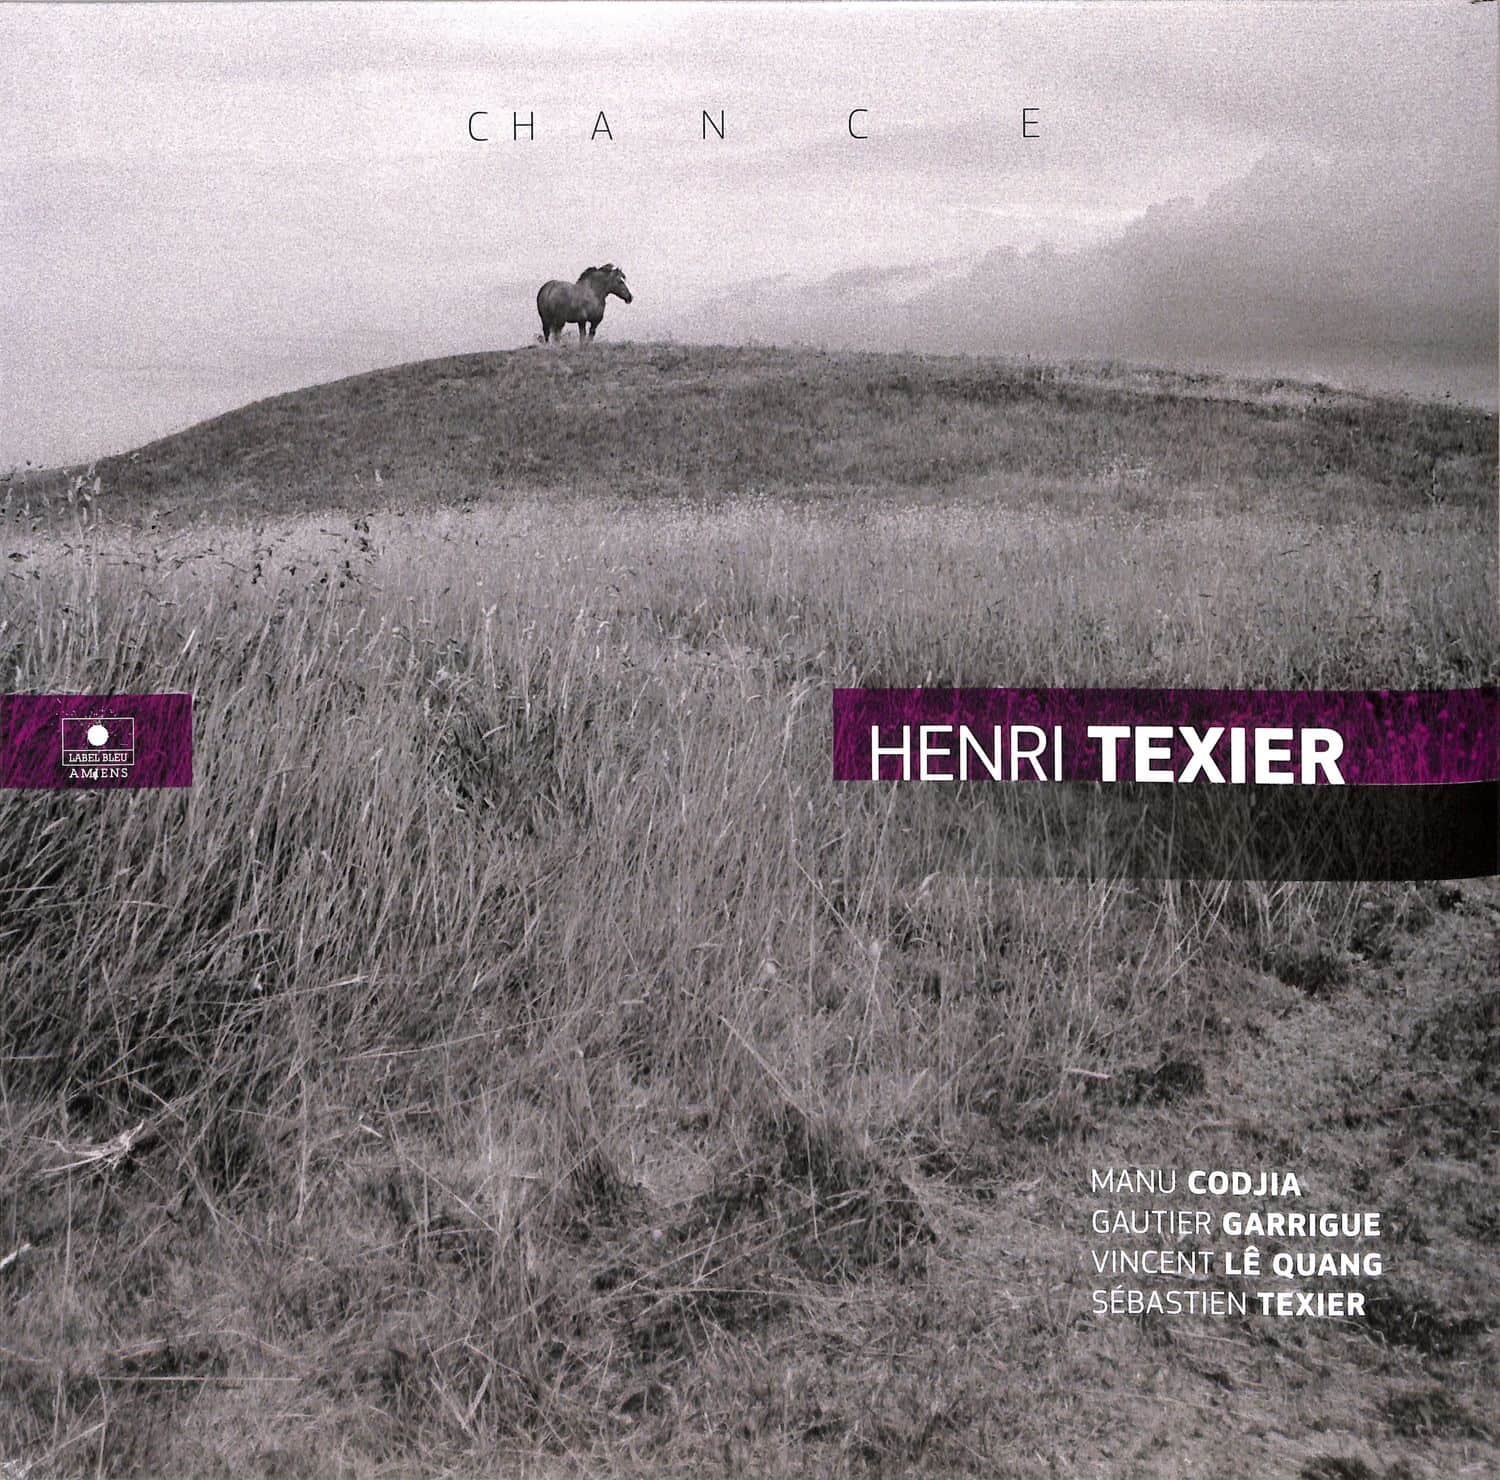 Henri Texier - CHANCE 